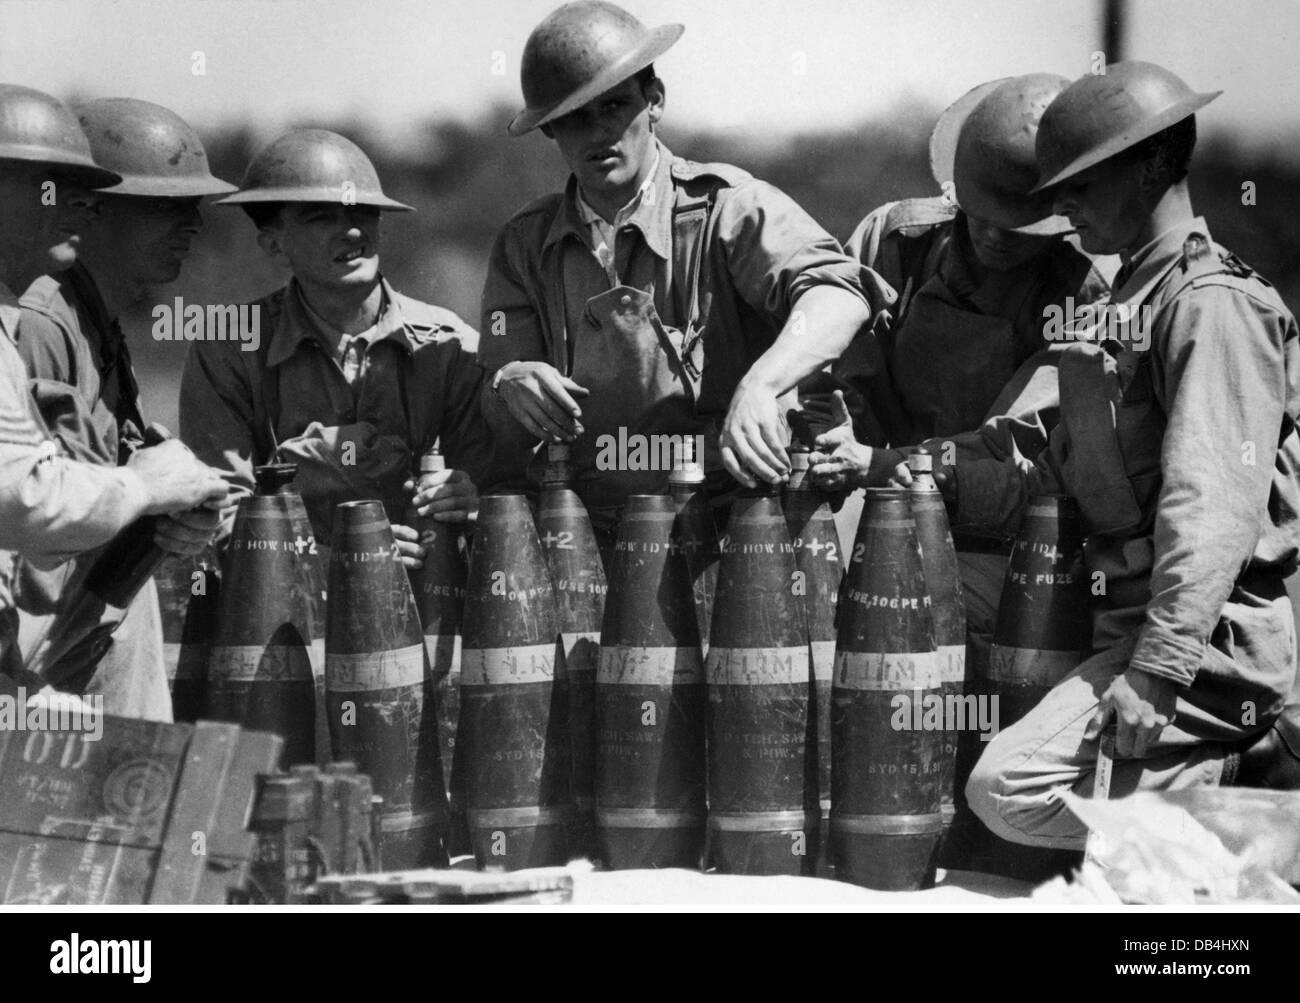 Militares, Australia, artilleros durante su entrenamiento, alrededor de 1940, Derechos adicionales-Clearencias-no disponible Foto de stock